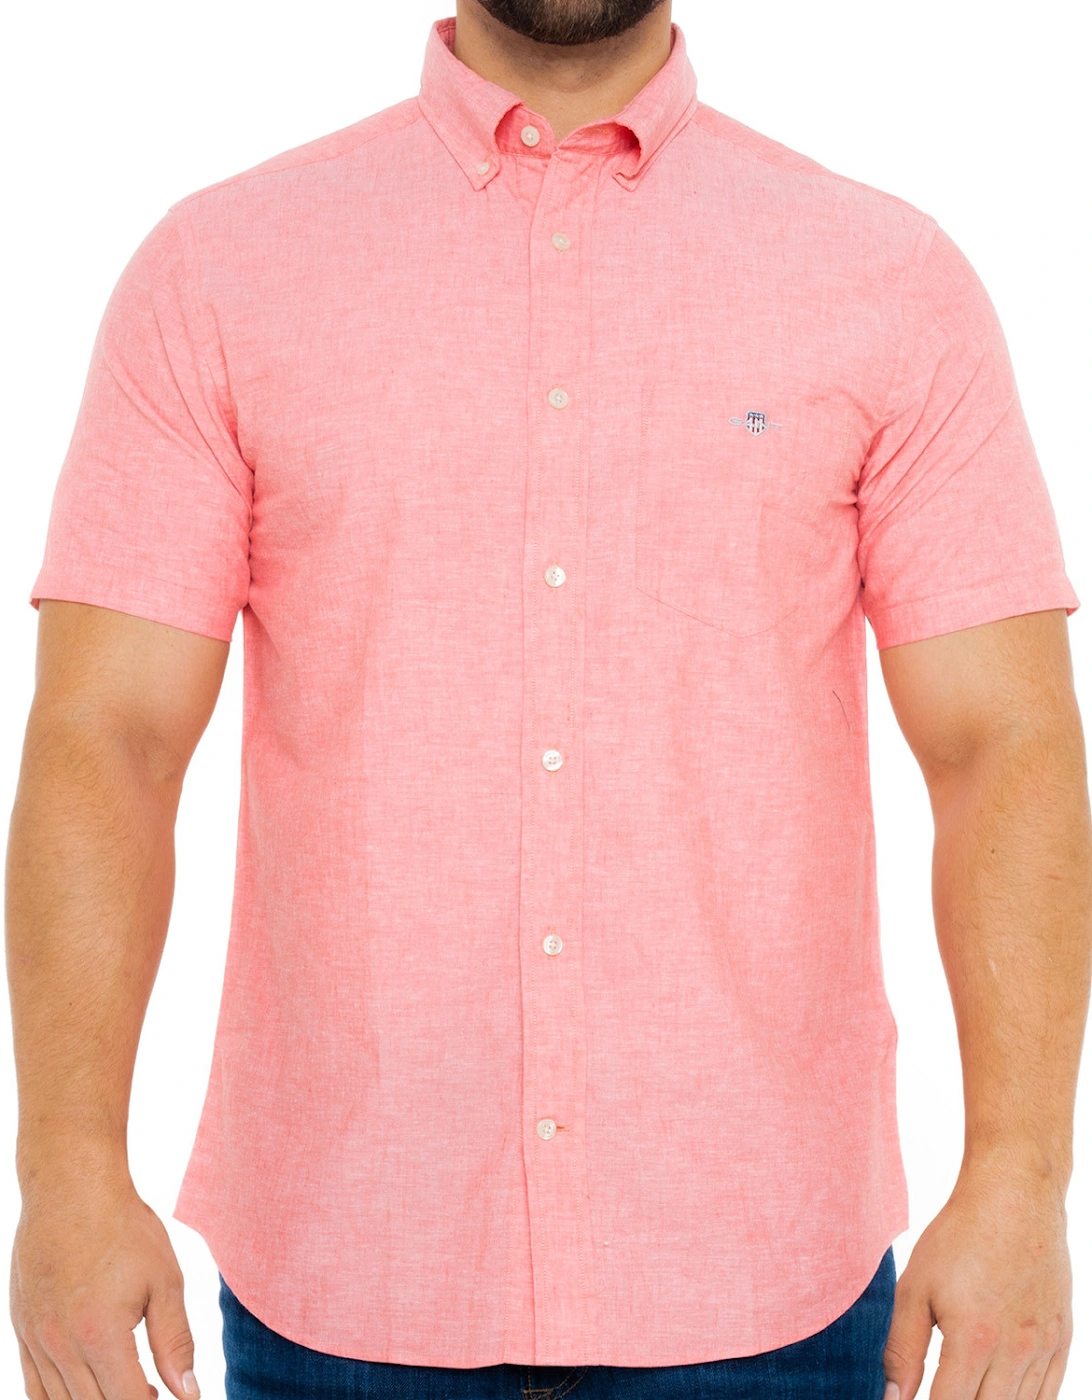 Mens Cotton & Linen Short Sleeve Shirt (Pink), 8 of 7